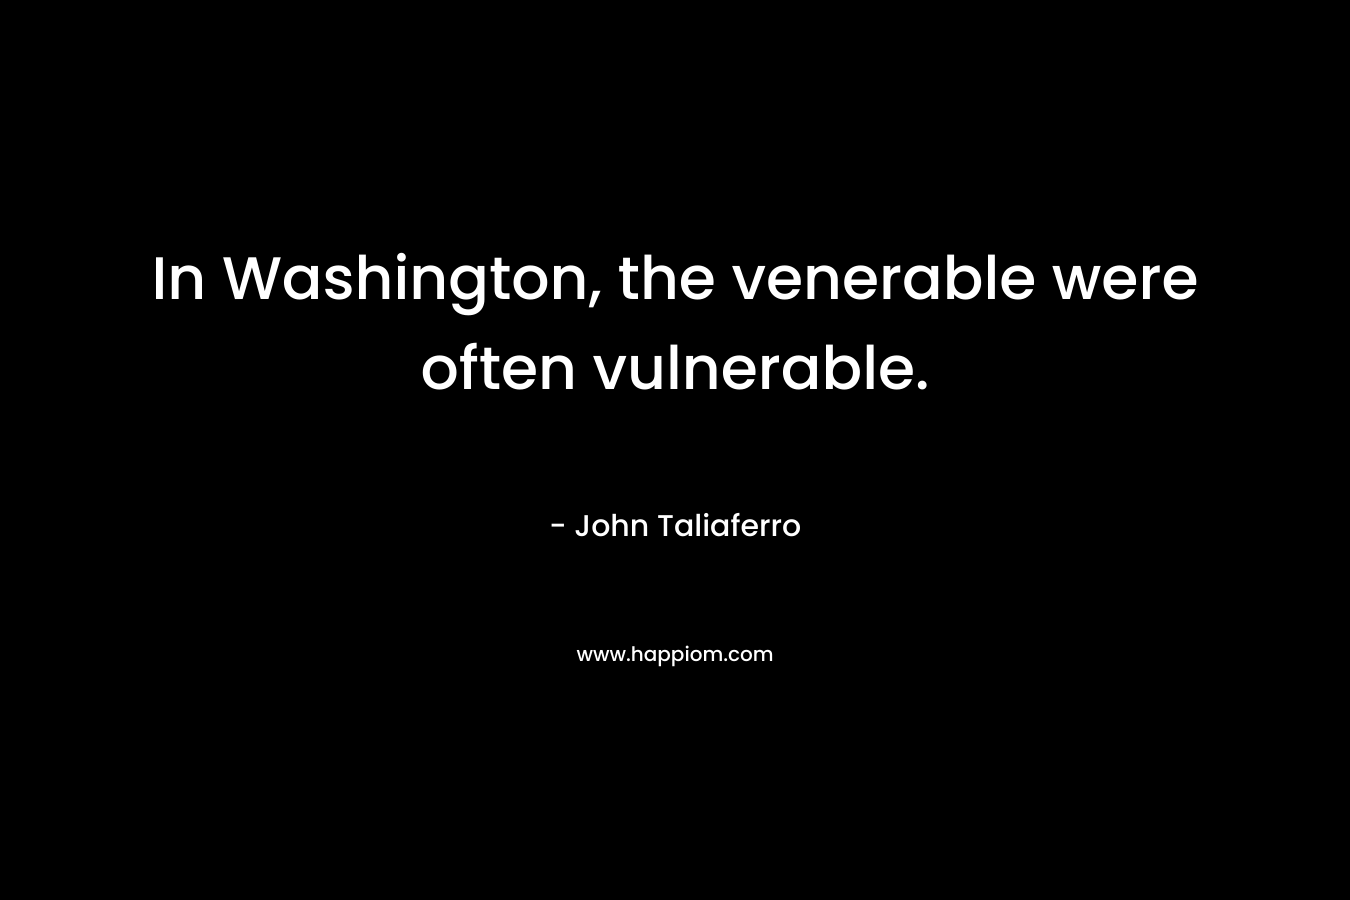 In Washington, the venerable were often vulnerable.